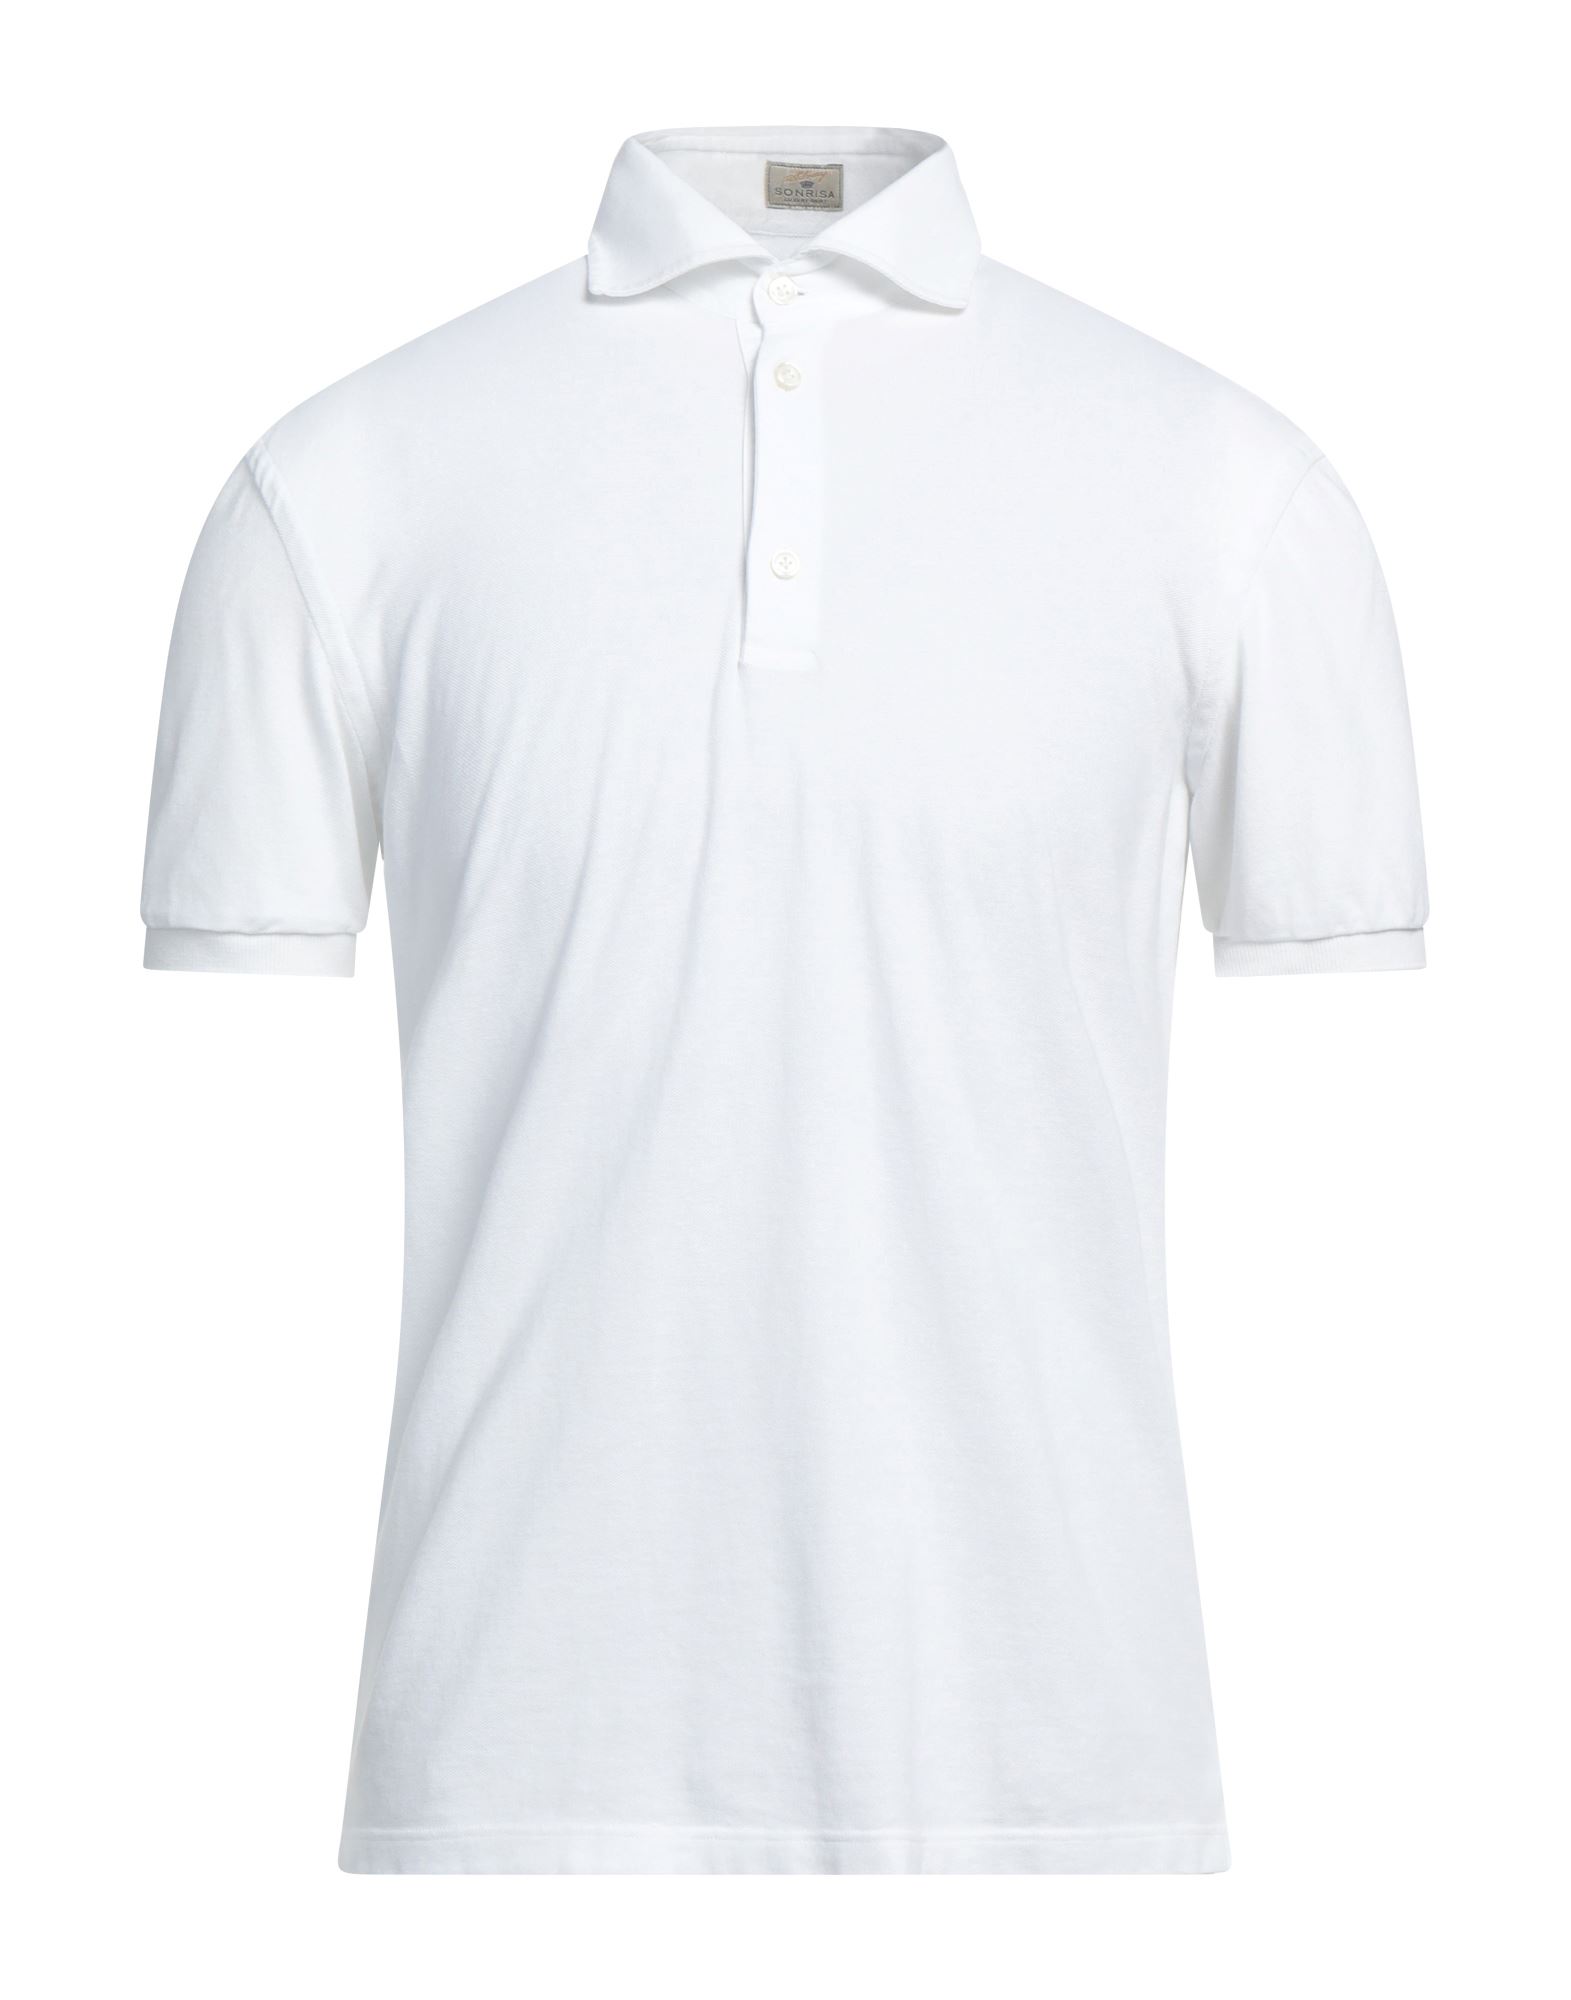 Sonrisa Polo Shirts In White